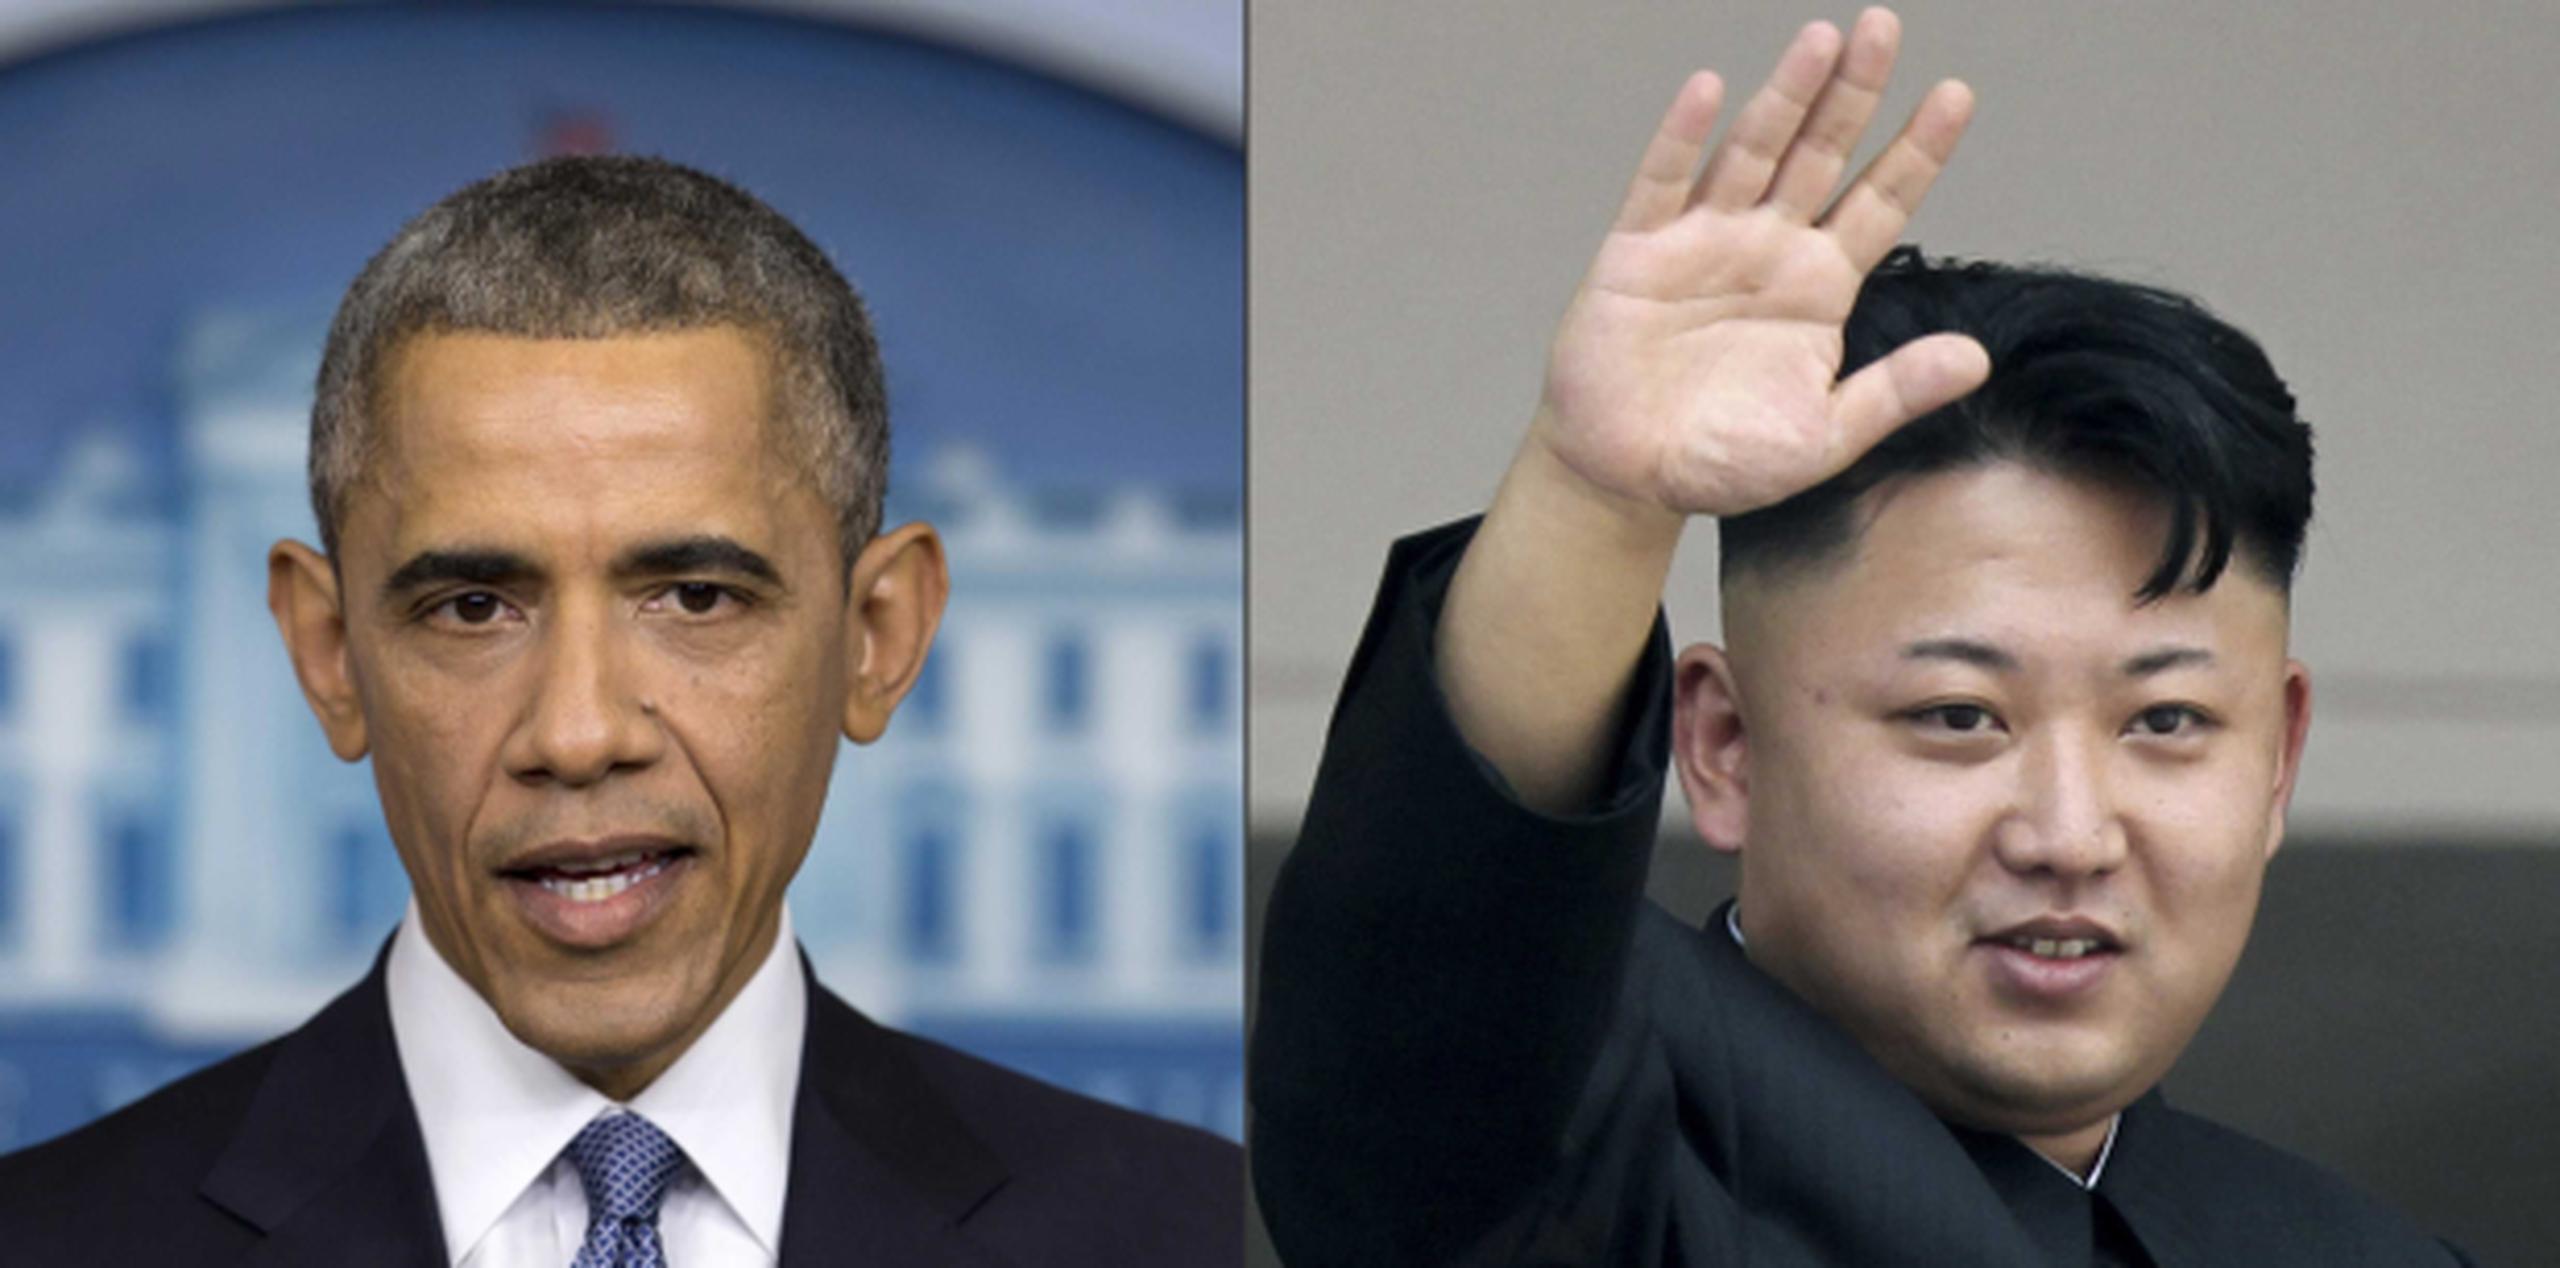 El régimen liderado por Kim Jong-un volvió a negar que esté detrás del ciberataque sufrido por Sony Pictures, como afirma la Casa Blanca. En la foto, Barack Obama, presidente de Estados Unidos, y Kim Jong Un, líder de Corea del Norte. (AP)